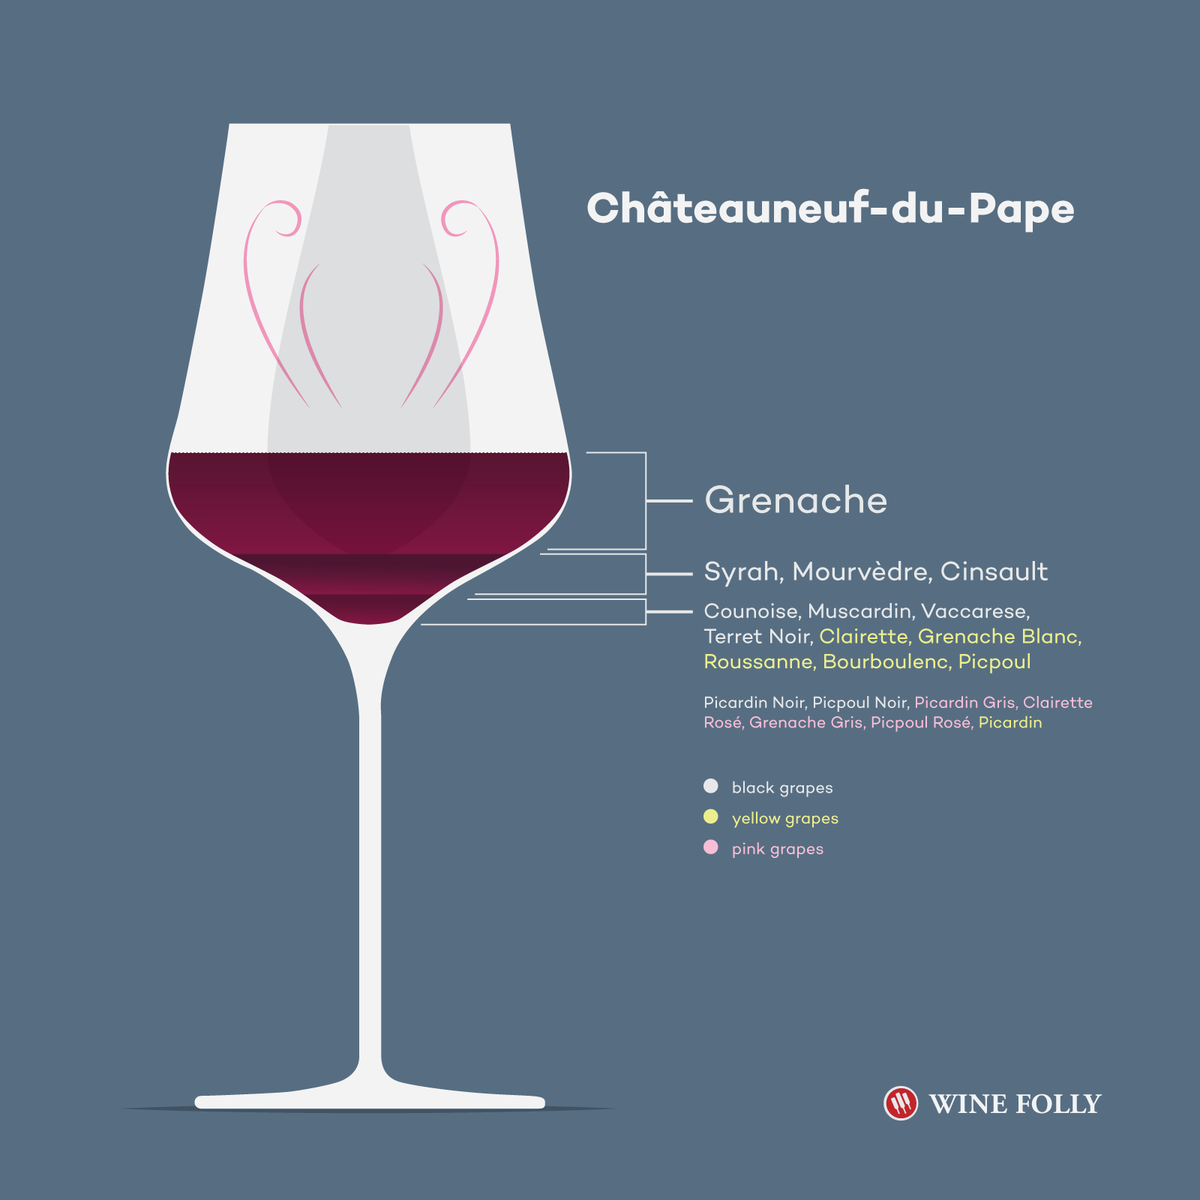 Opisyal na Mga Grapes ng Chateawhirif-du-Pape - Mayroong 20 - Glass Illustration ni Wine Folly